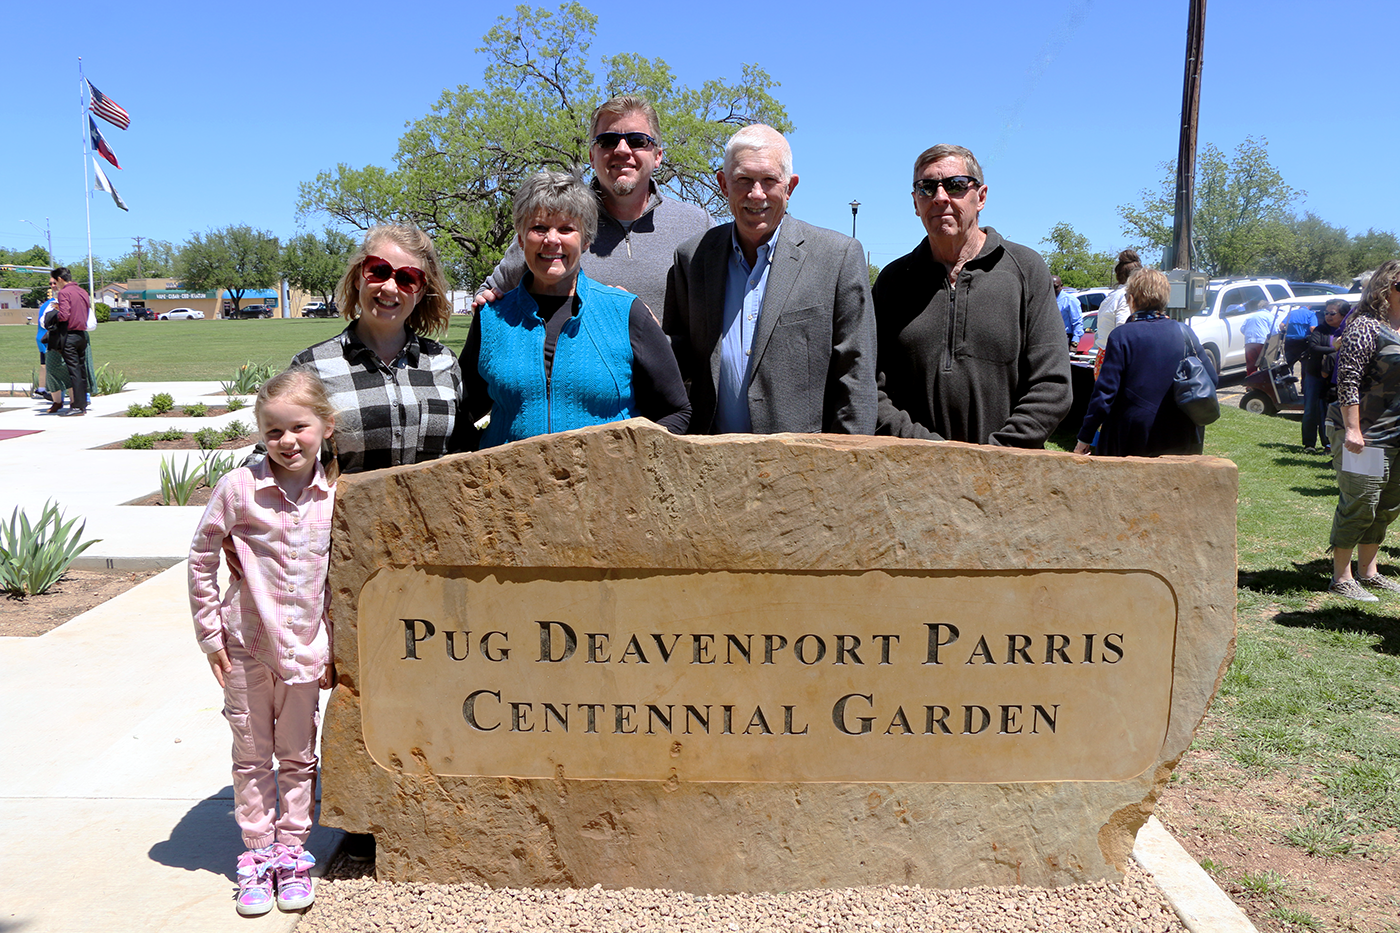 Pug Davenport Parris Centennial Garden